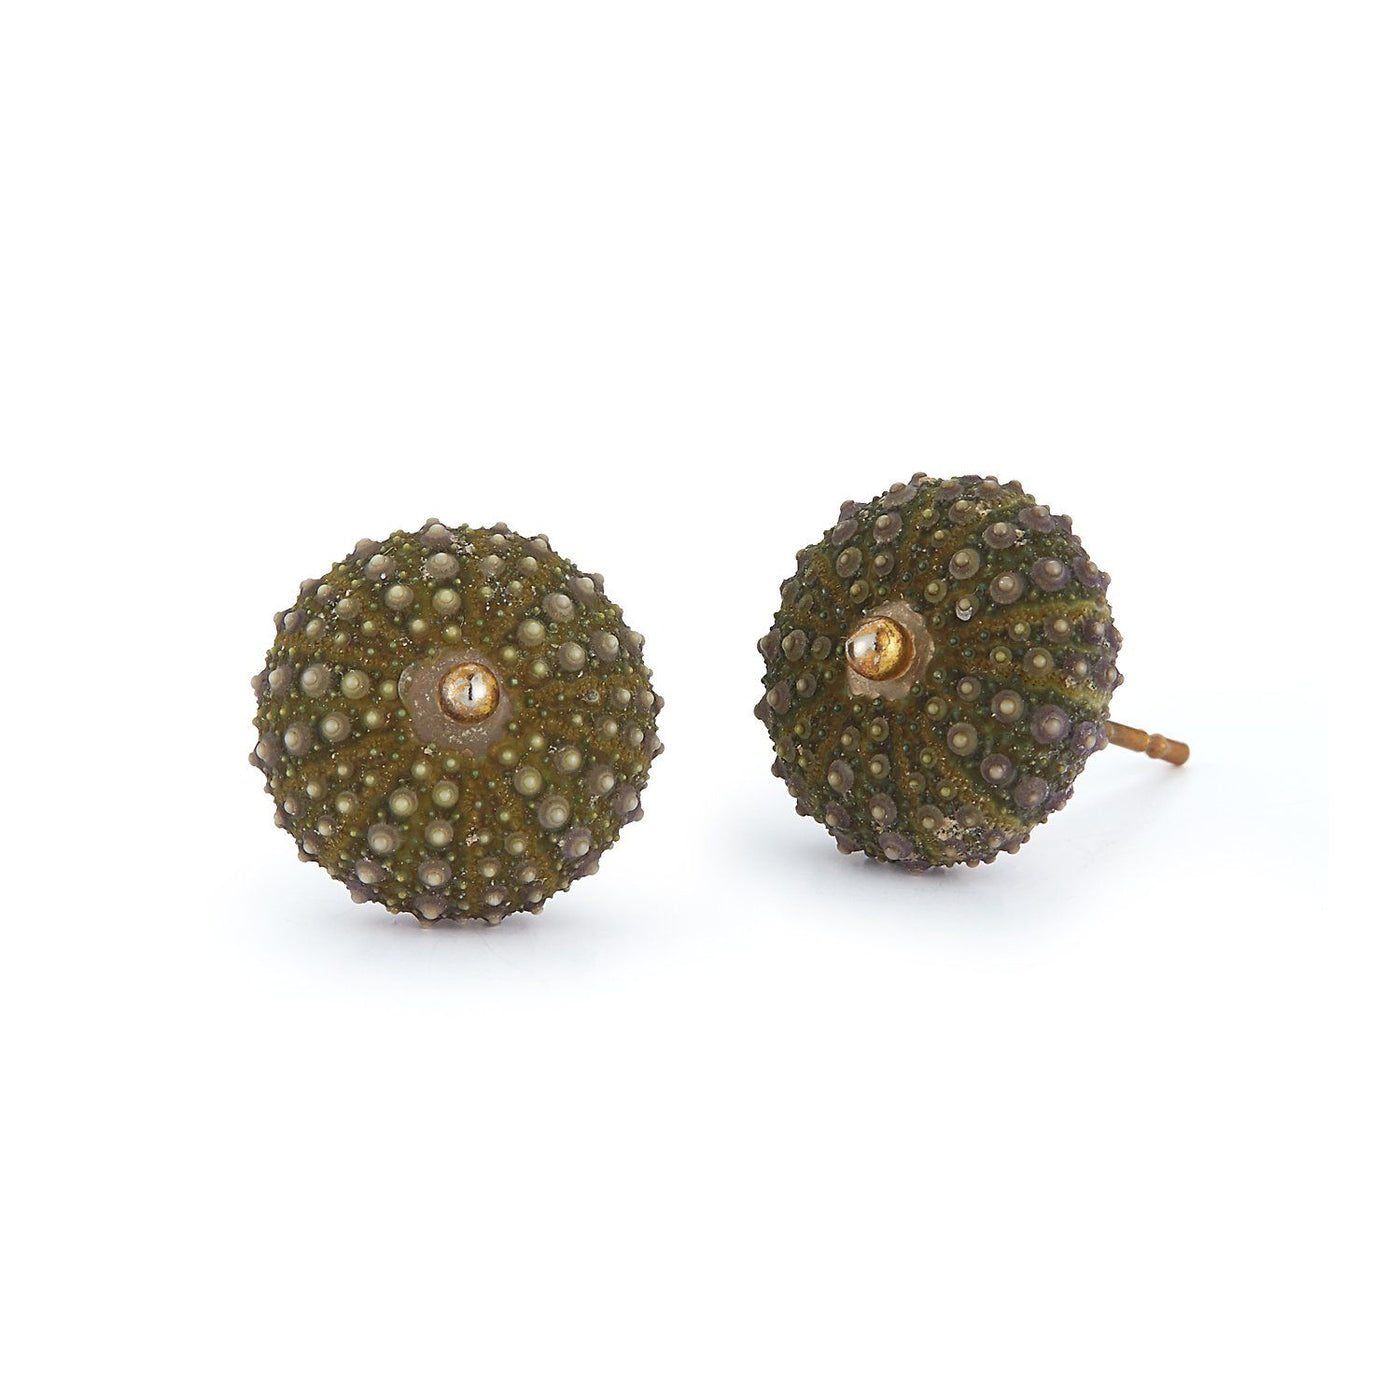 Sea Urchin Earrings - Green Chefanie 